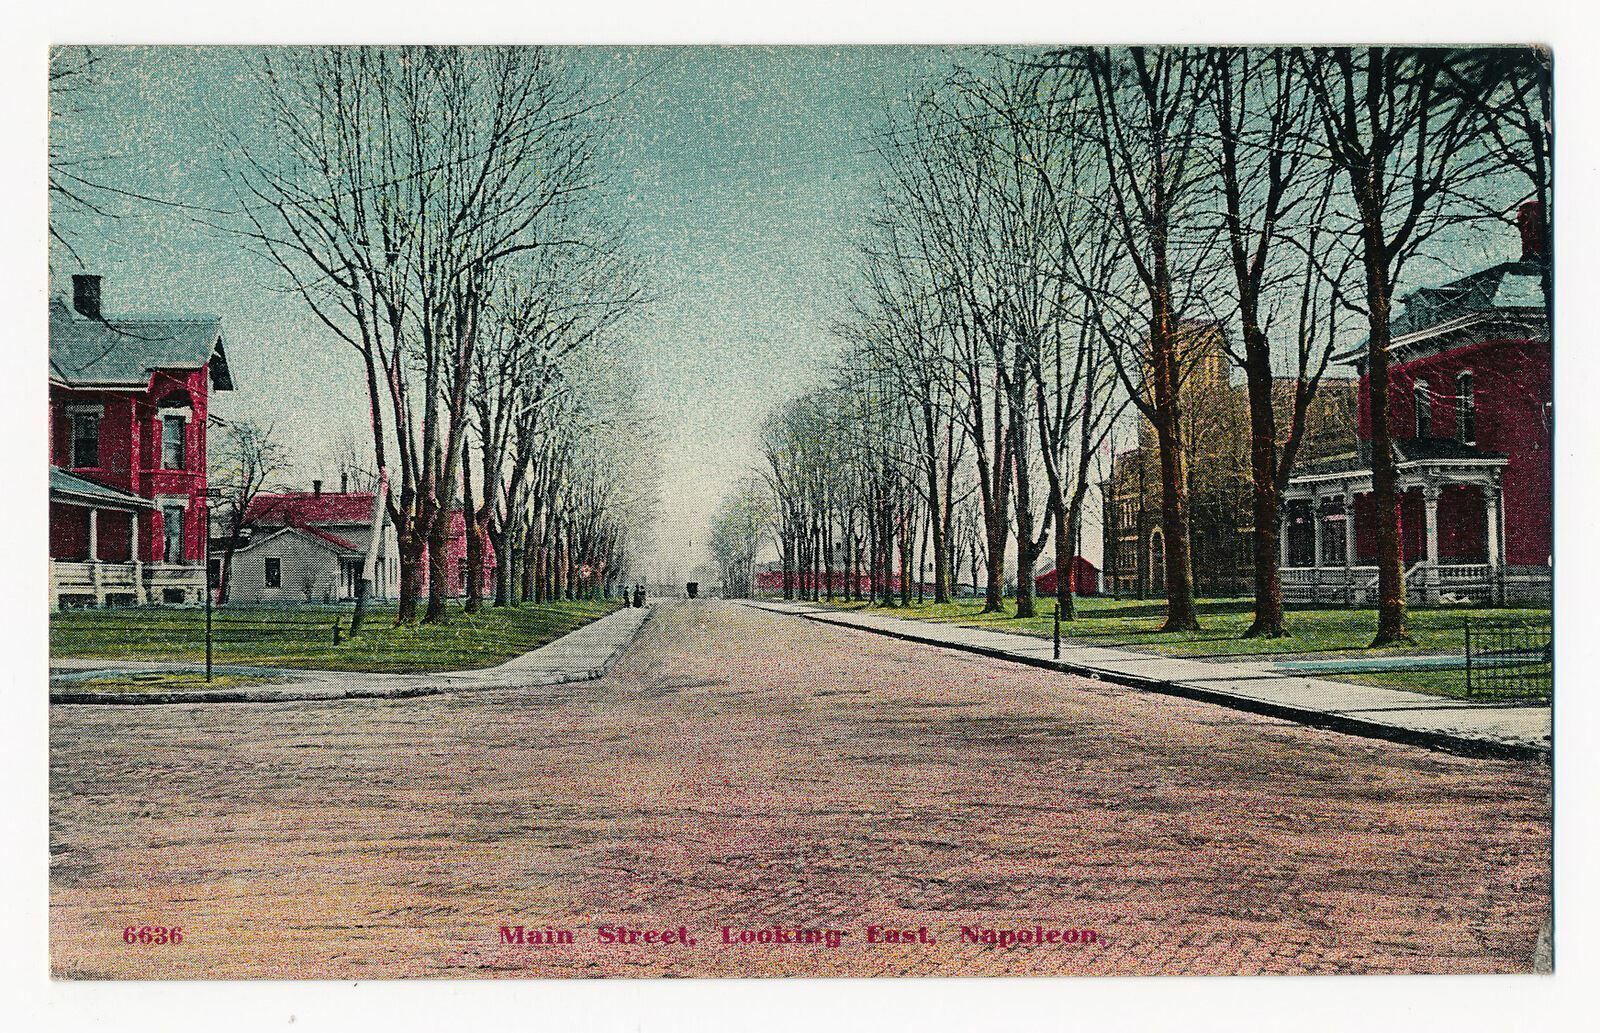 Main Street looking East, Napoleon, Ohio 1912